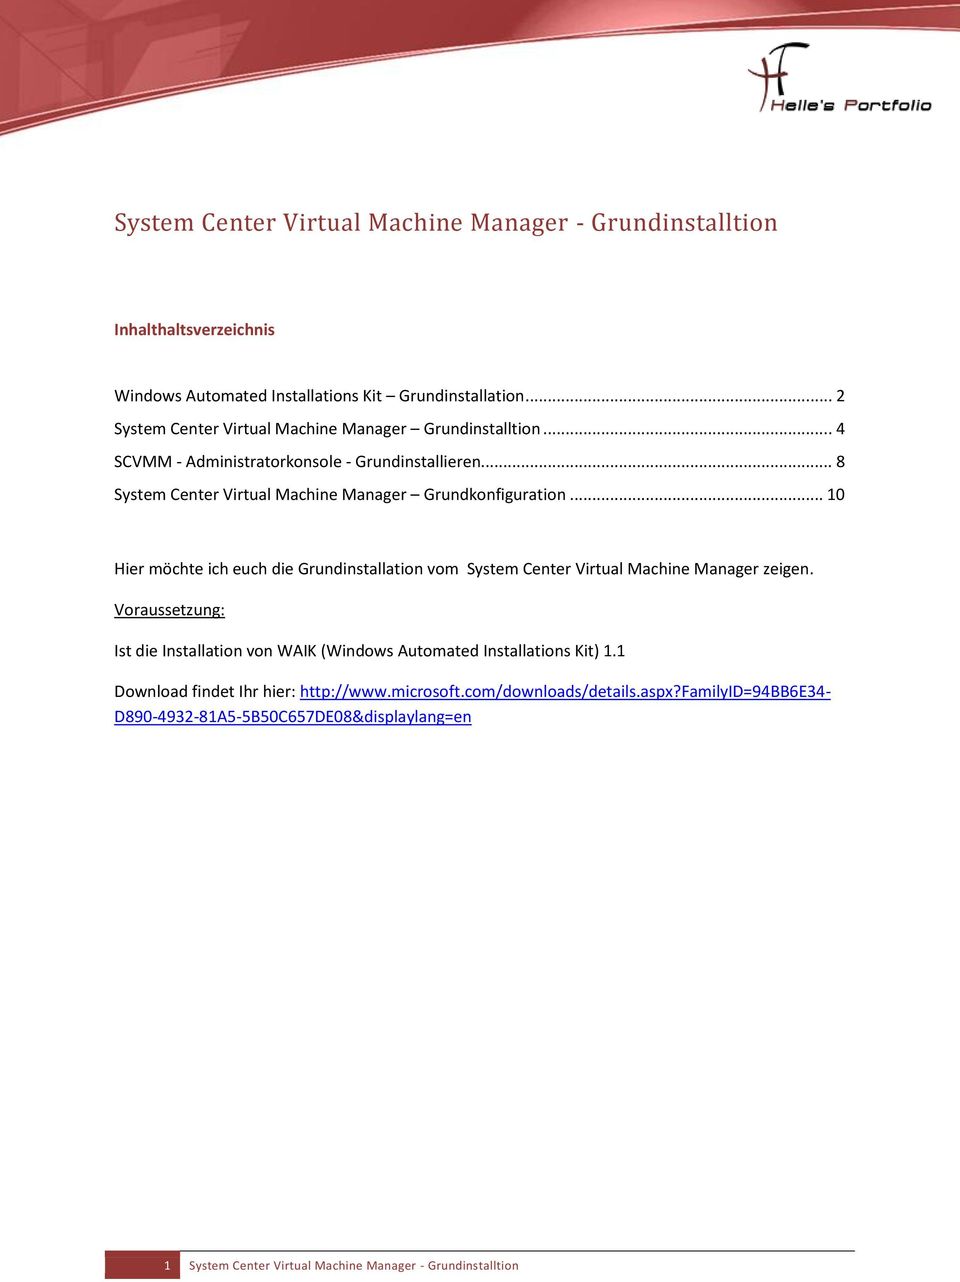 .. 8 System Center Virtual Machine Manager Grundkonfiguration... 10 Hier möchte ich euch die Grundinstallation vom System Center Virtual Machine Manager zeigen.